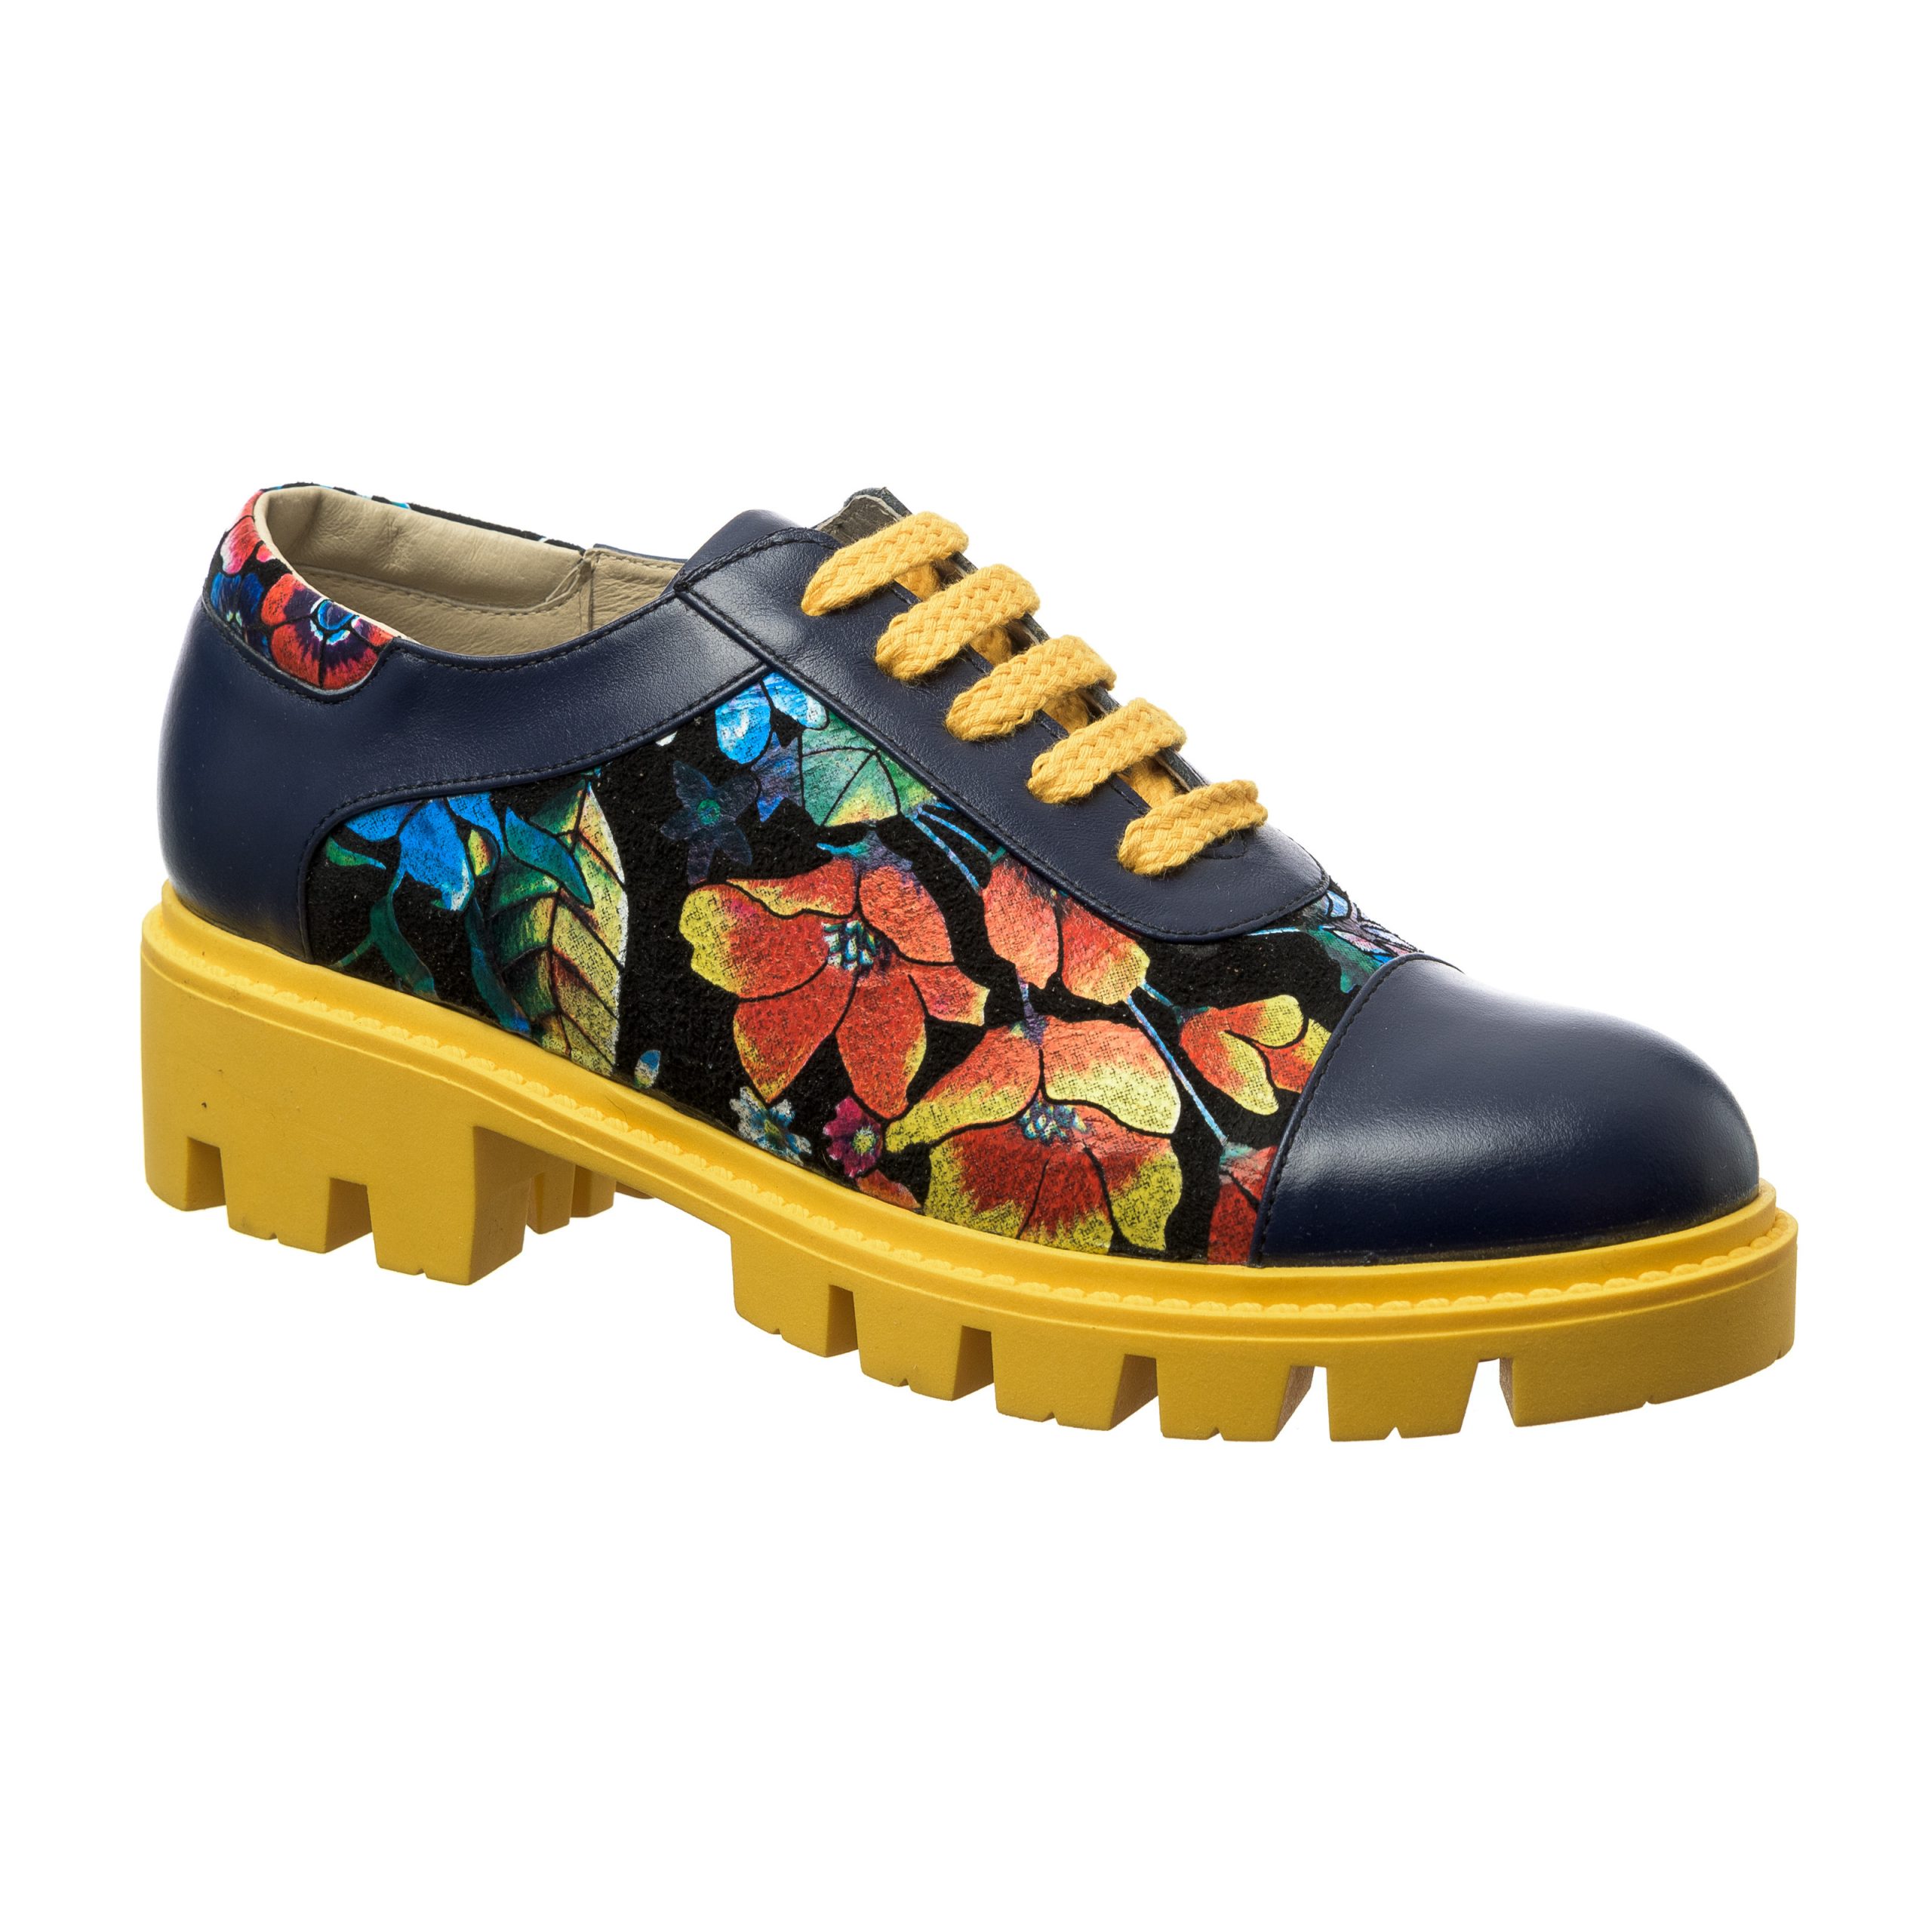 Pantofi Dama din Piele Naturala - Albastru Flori Noi - X2 ABFN